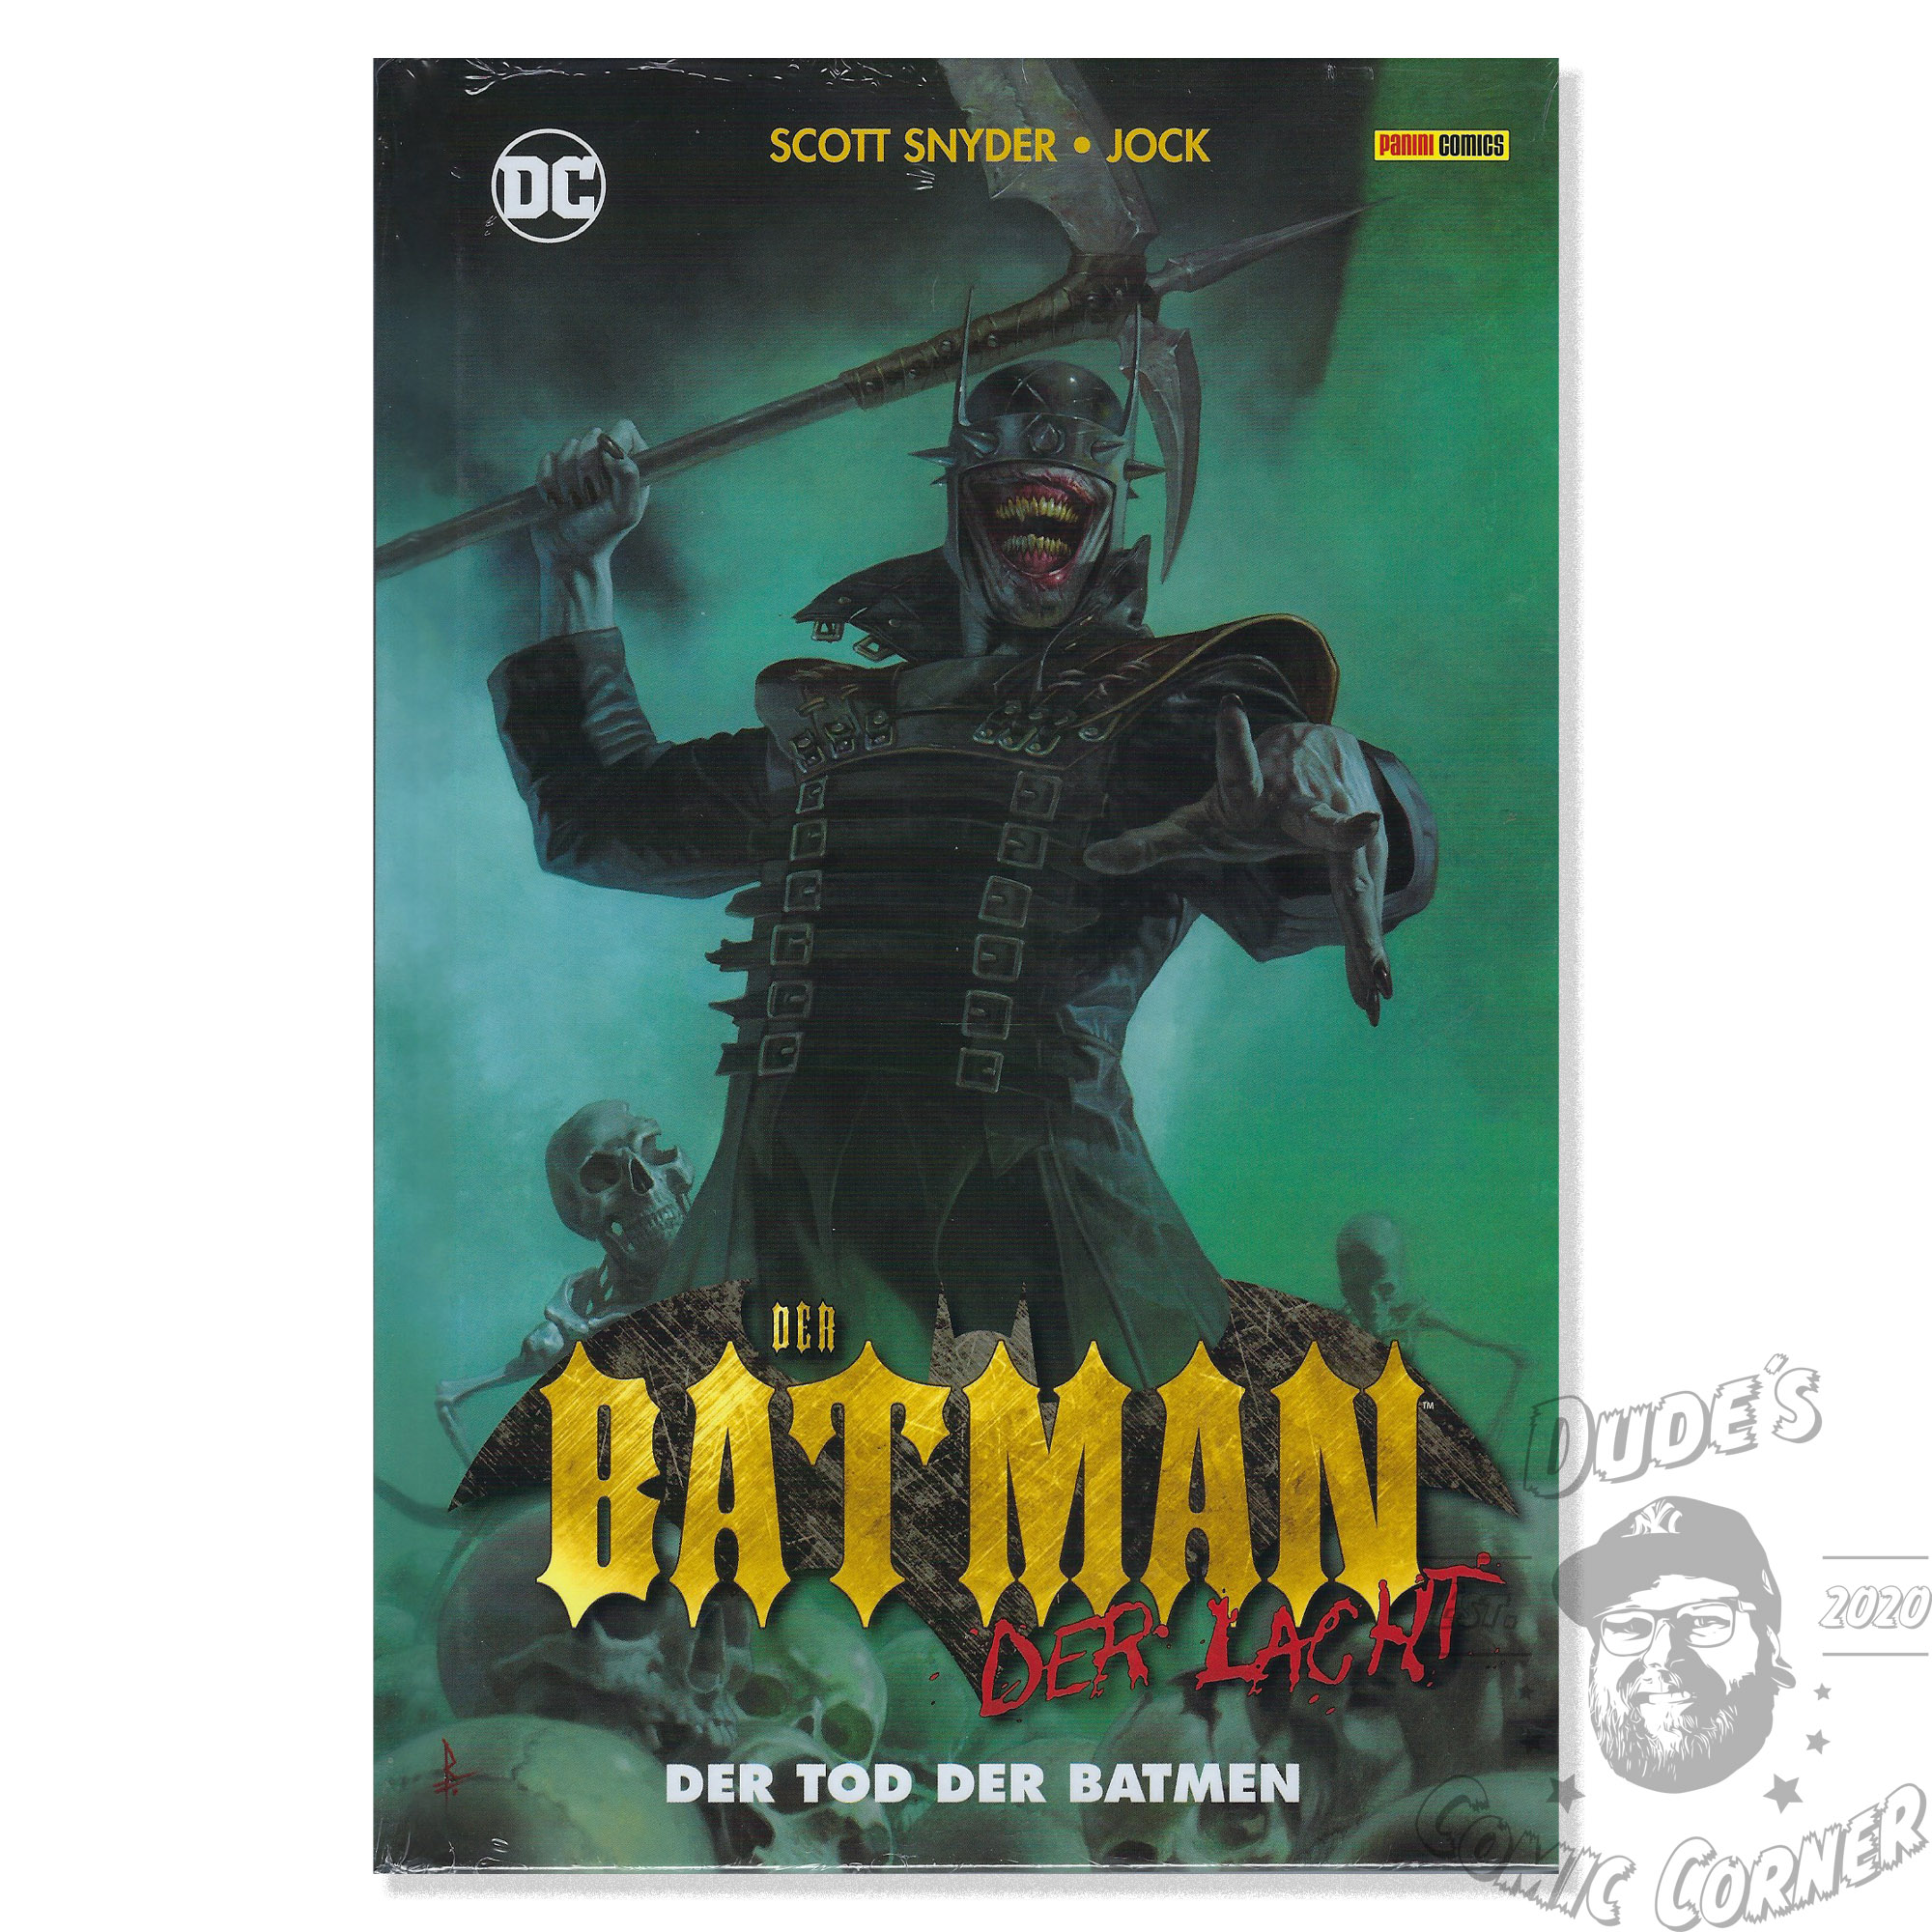 Auswahl DER BATMAN Variant DER LACHT Heft # 1 von 5 Panini 2019 NEUWARE